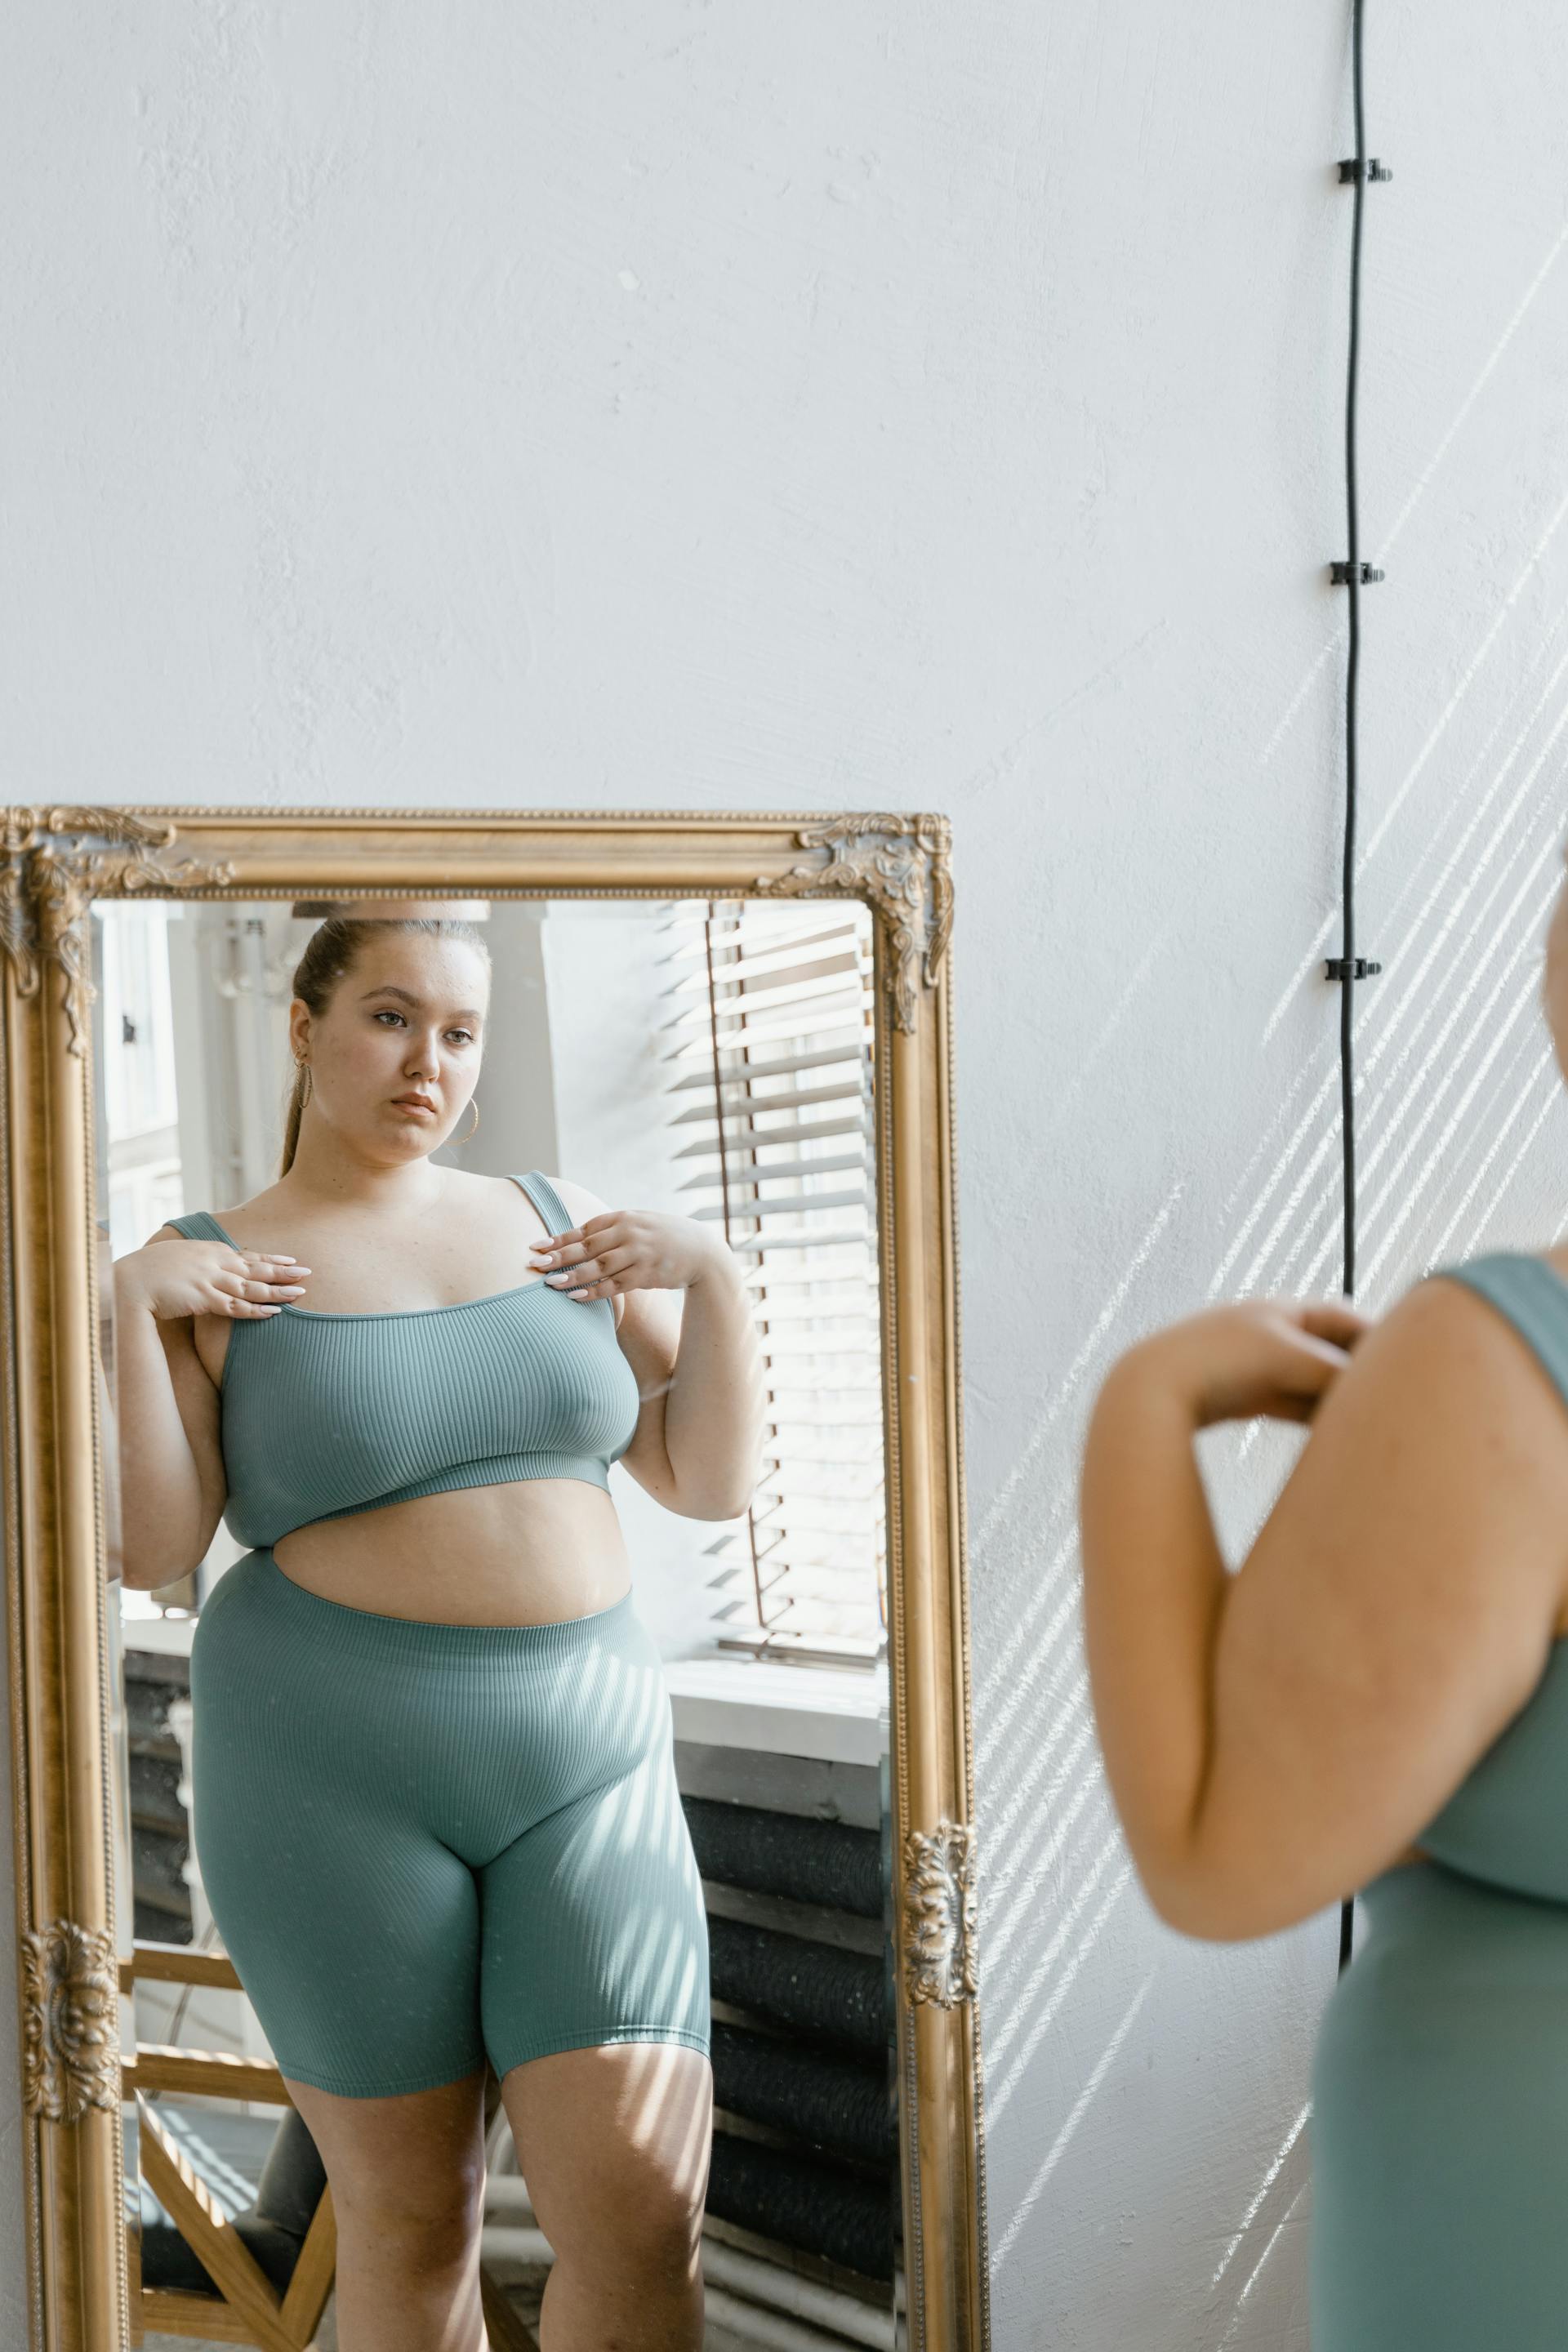 Une femme qui se regarde dans le miroir | Source : Pexels